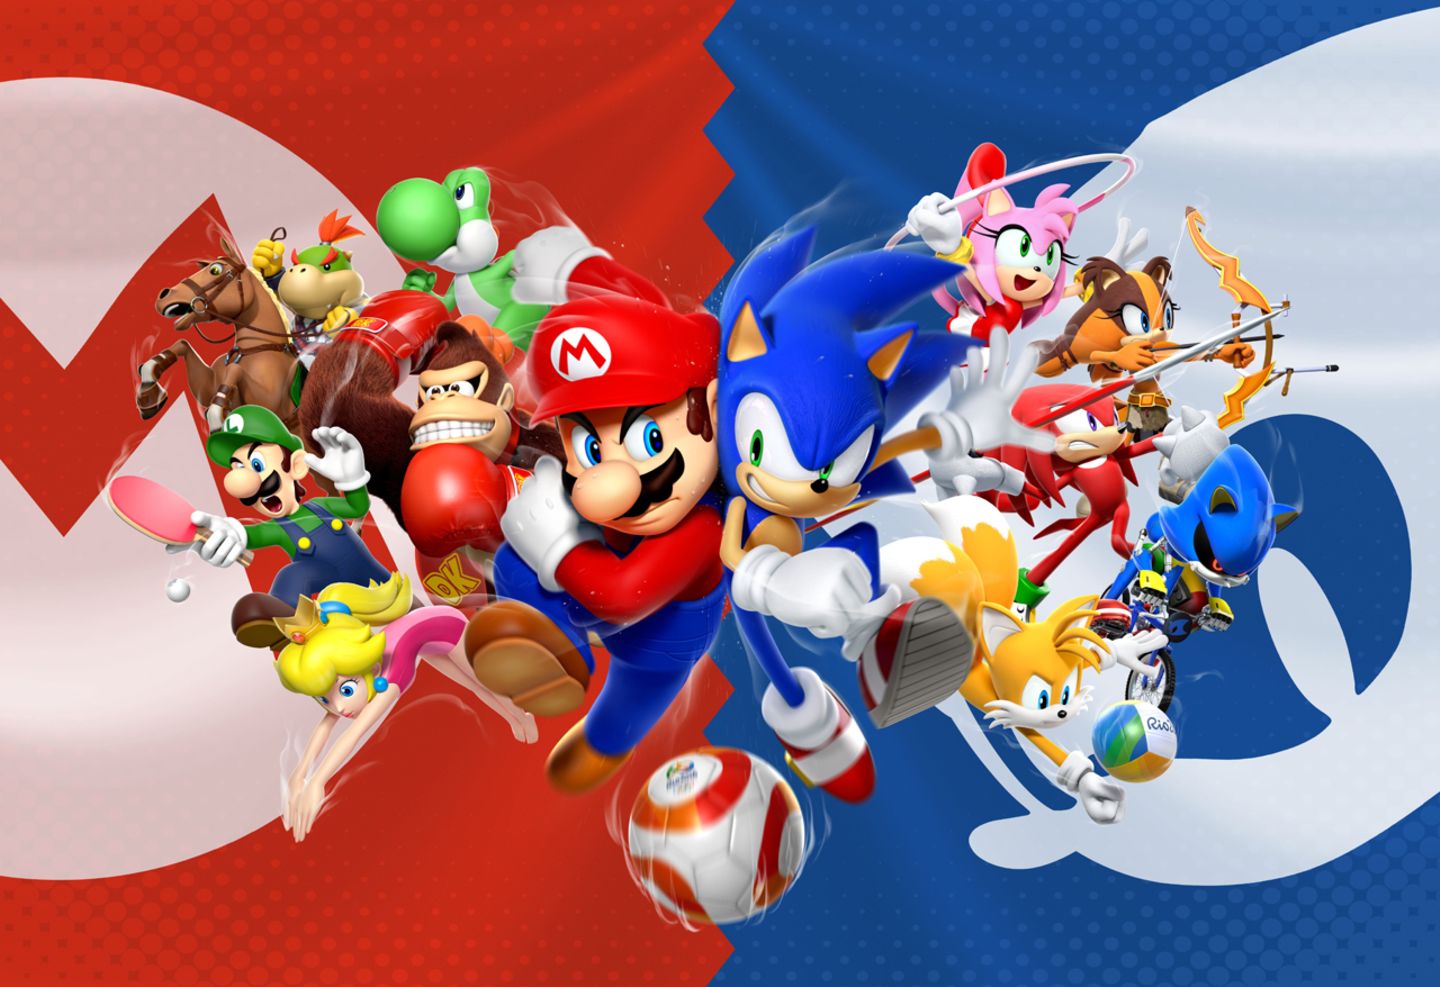 Spieletest: Begleitet Mario und Sonic zu den Olympischen Spielen 2016 nach Rio de Janeiro!